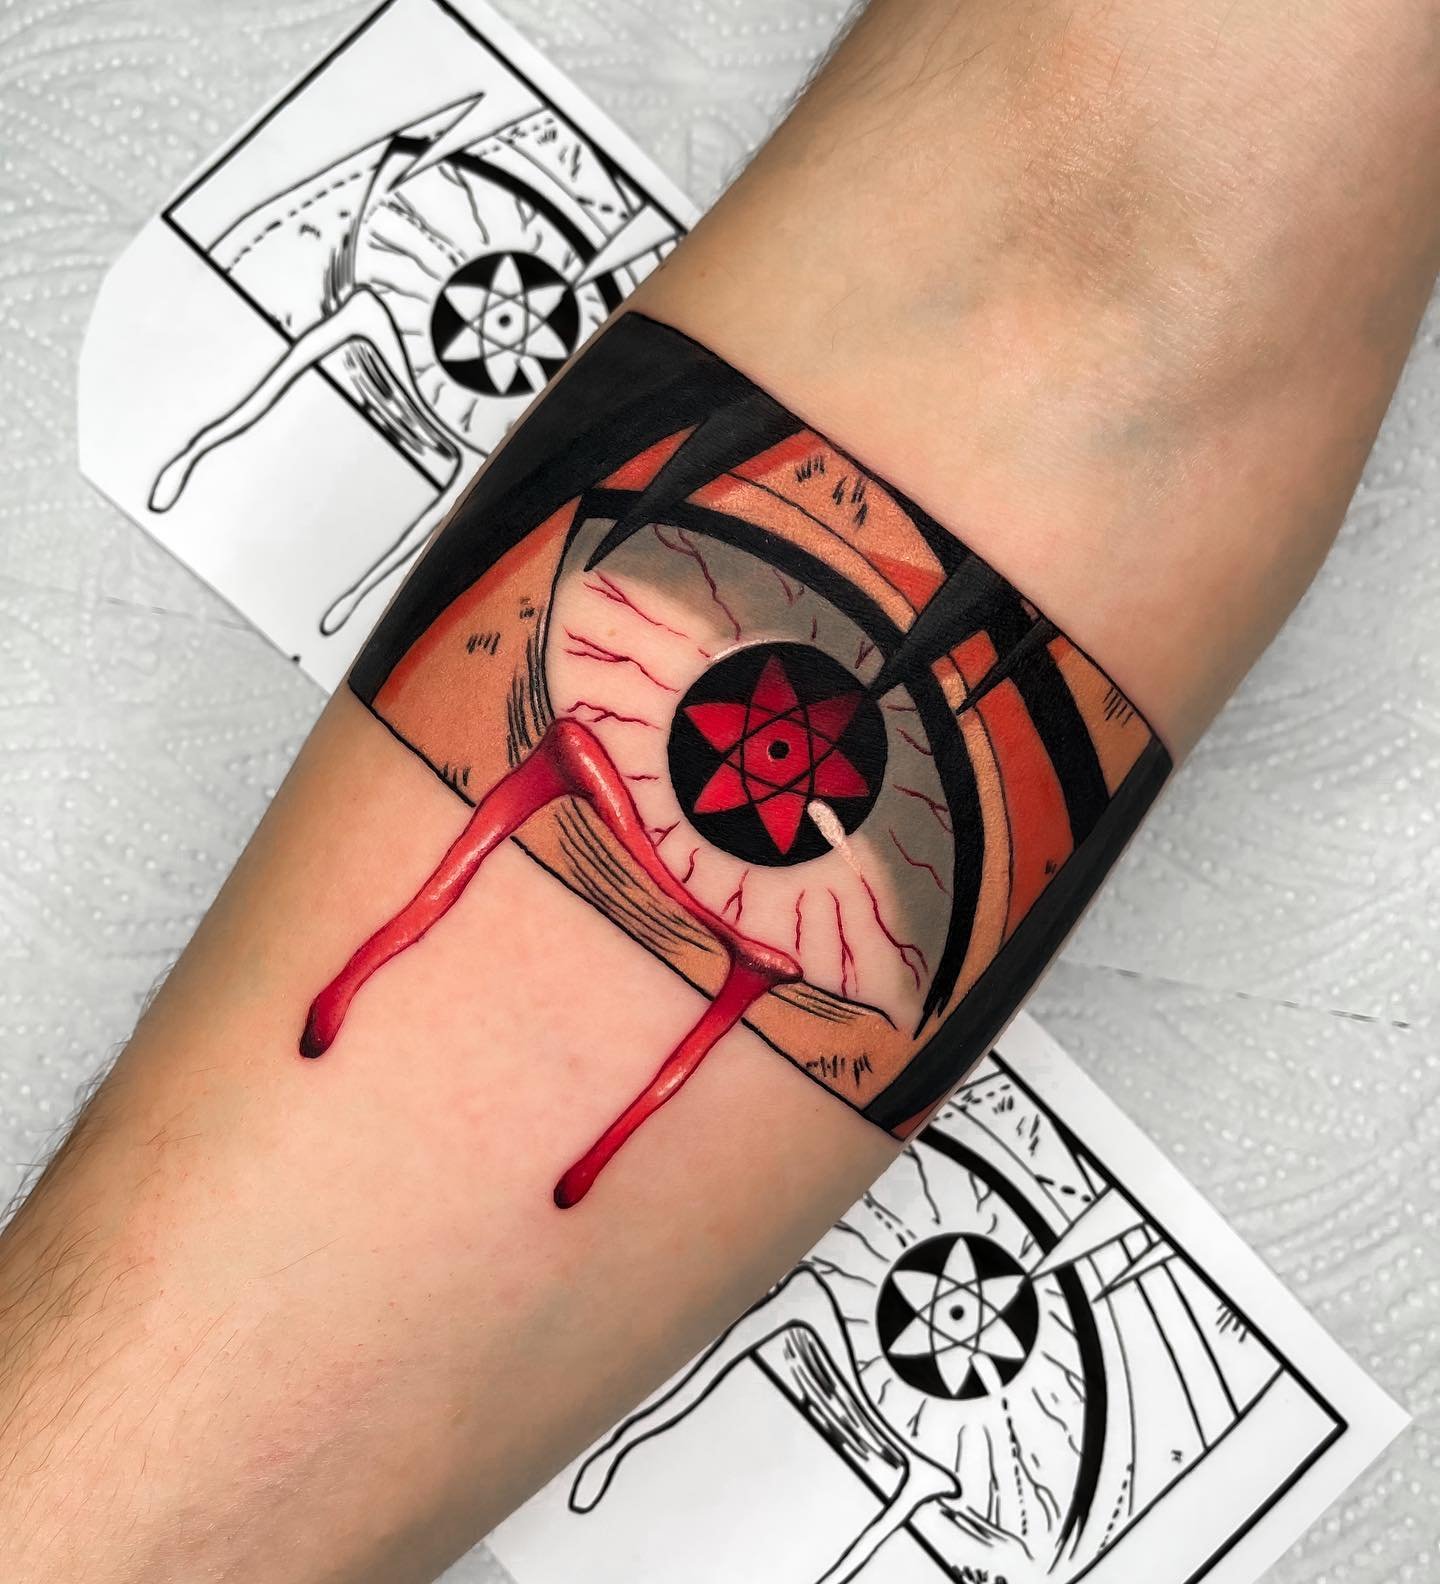 2 эксклюзивные татуировки как их нанести? - Форум Far Cry 3